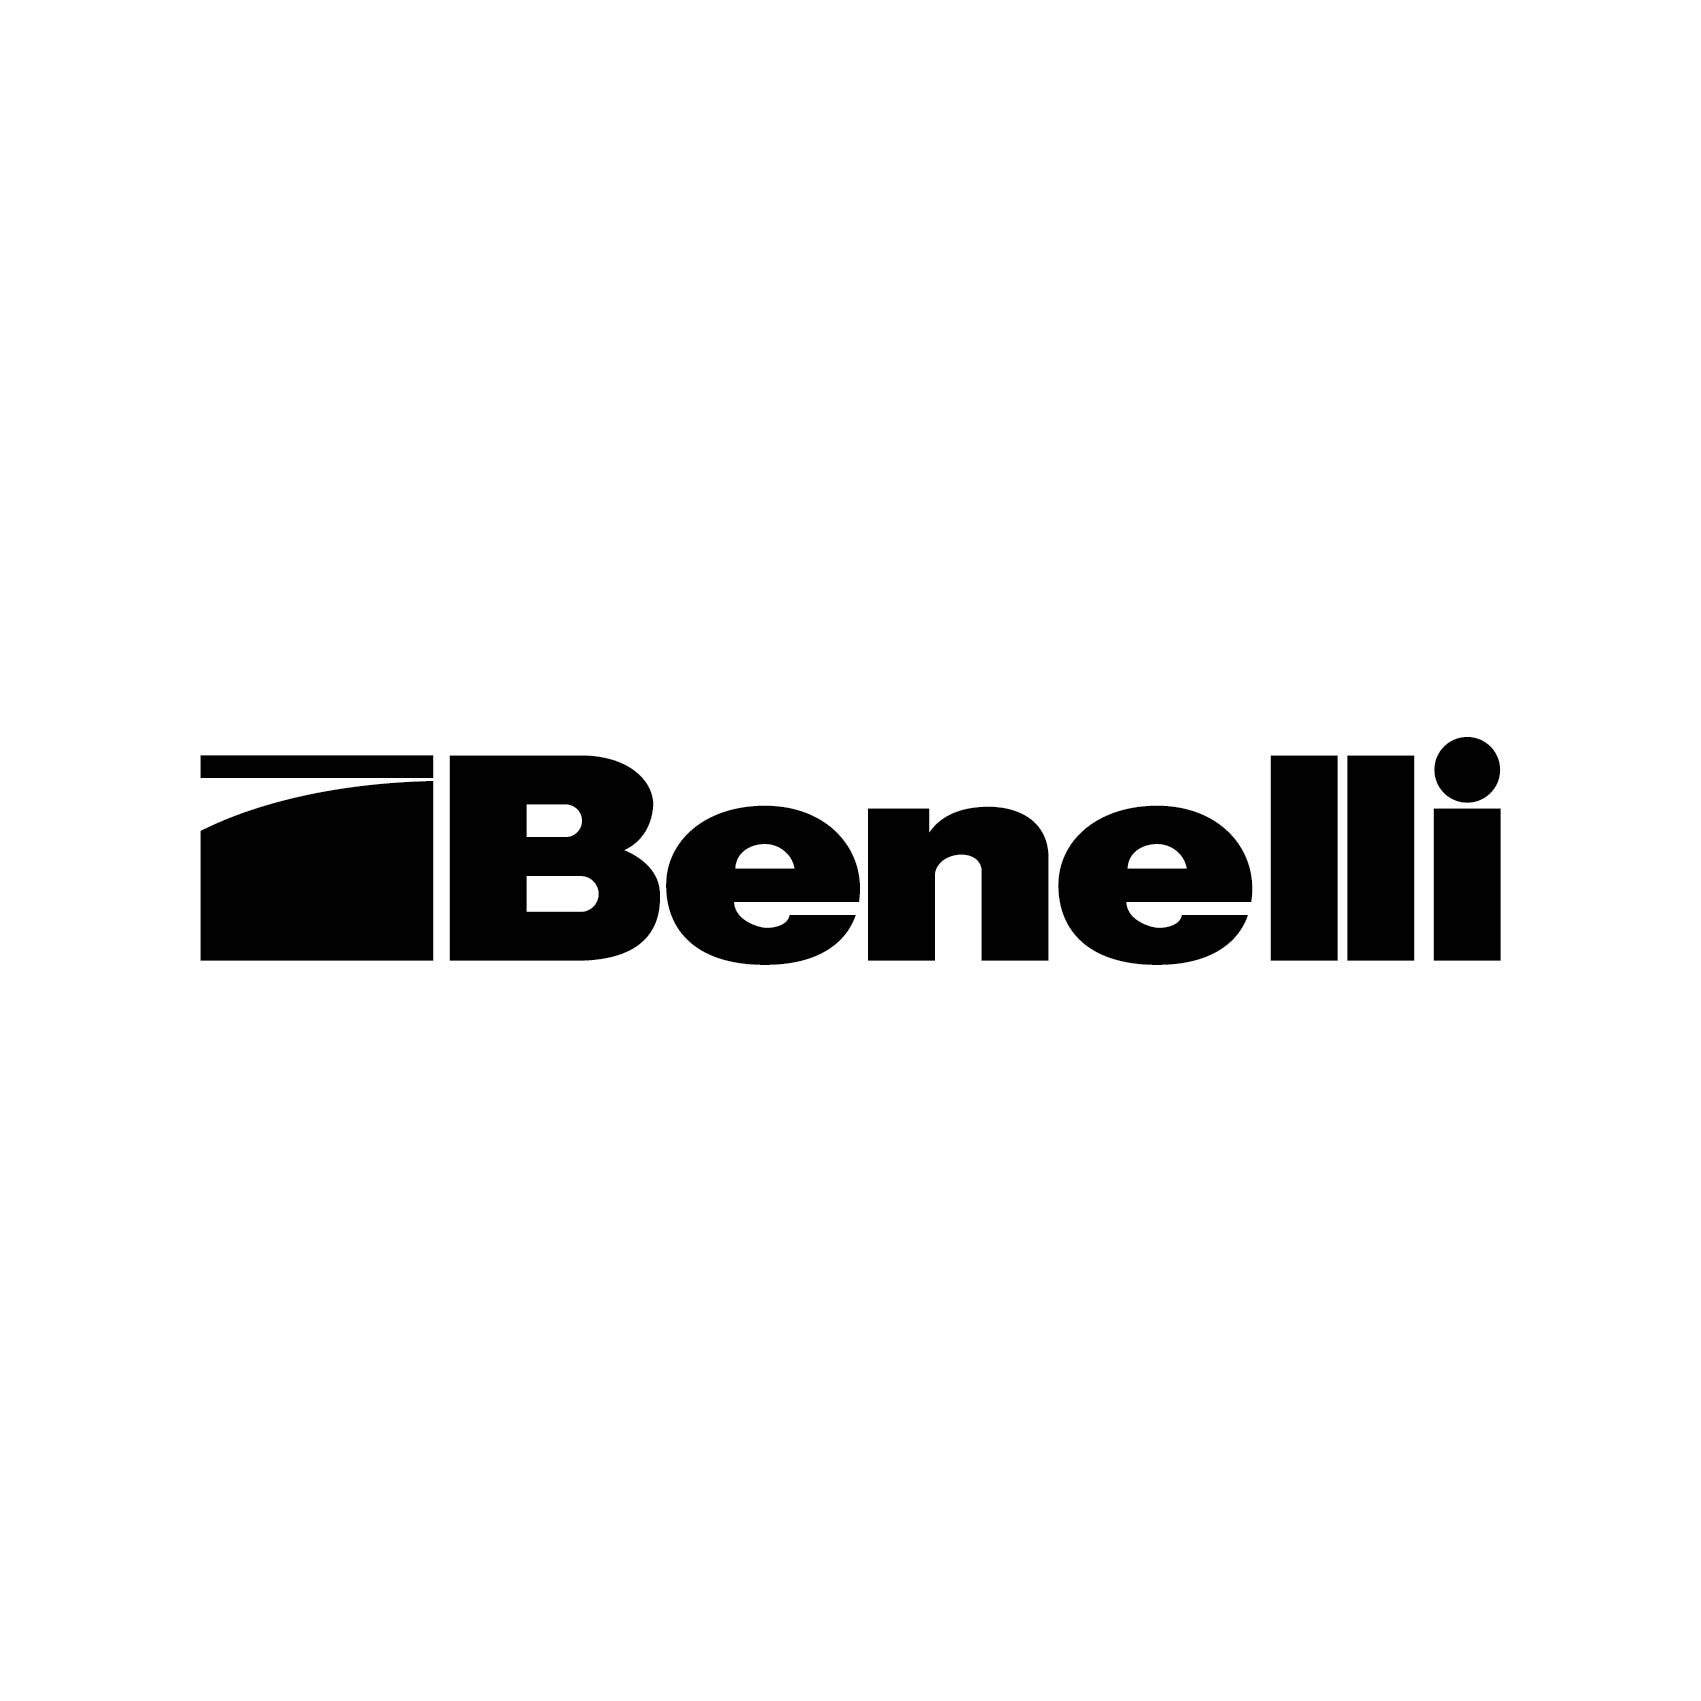 stickers-benelli-ref3benelli-autocollant-benelli-moto-sticker-pour-moto-sport